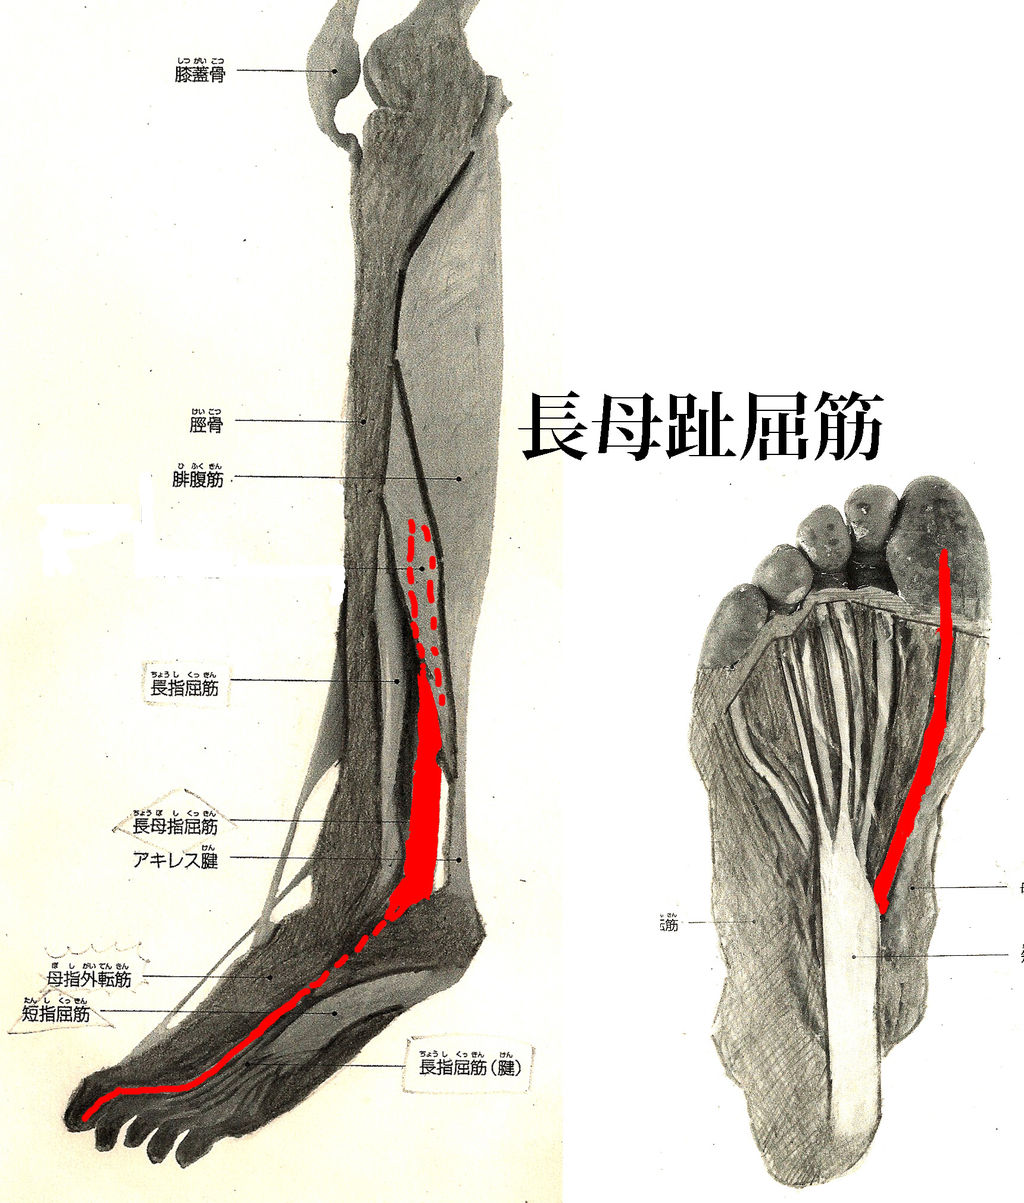 超声引导下踝关节及足部疼痛治疗 讲者：吴文知老师 - 麻醉疼痛 -丁香园论坛